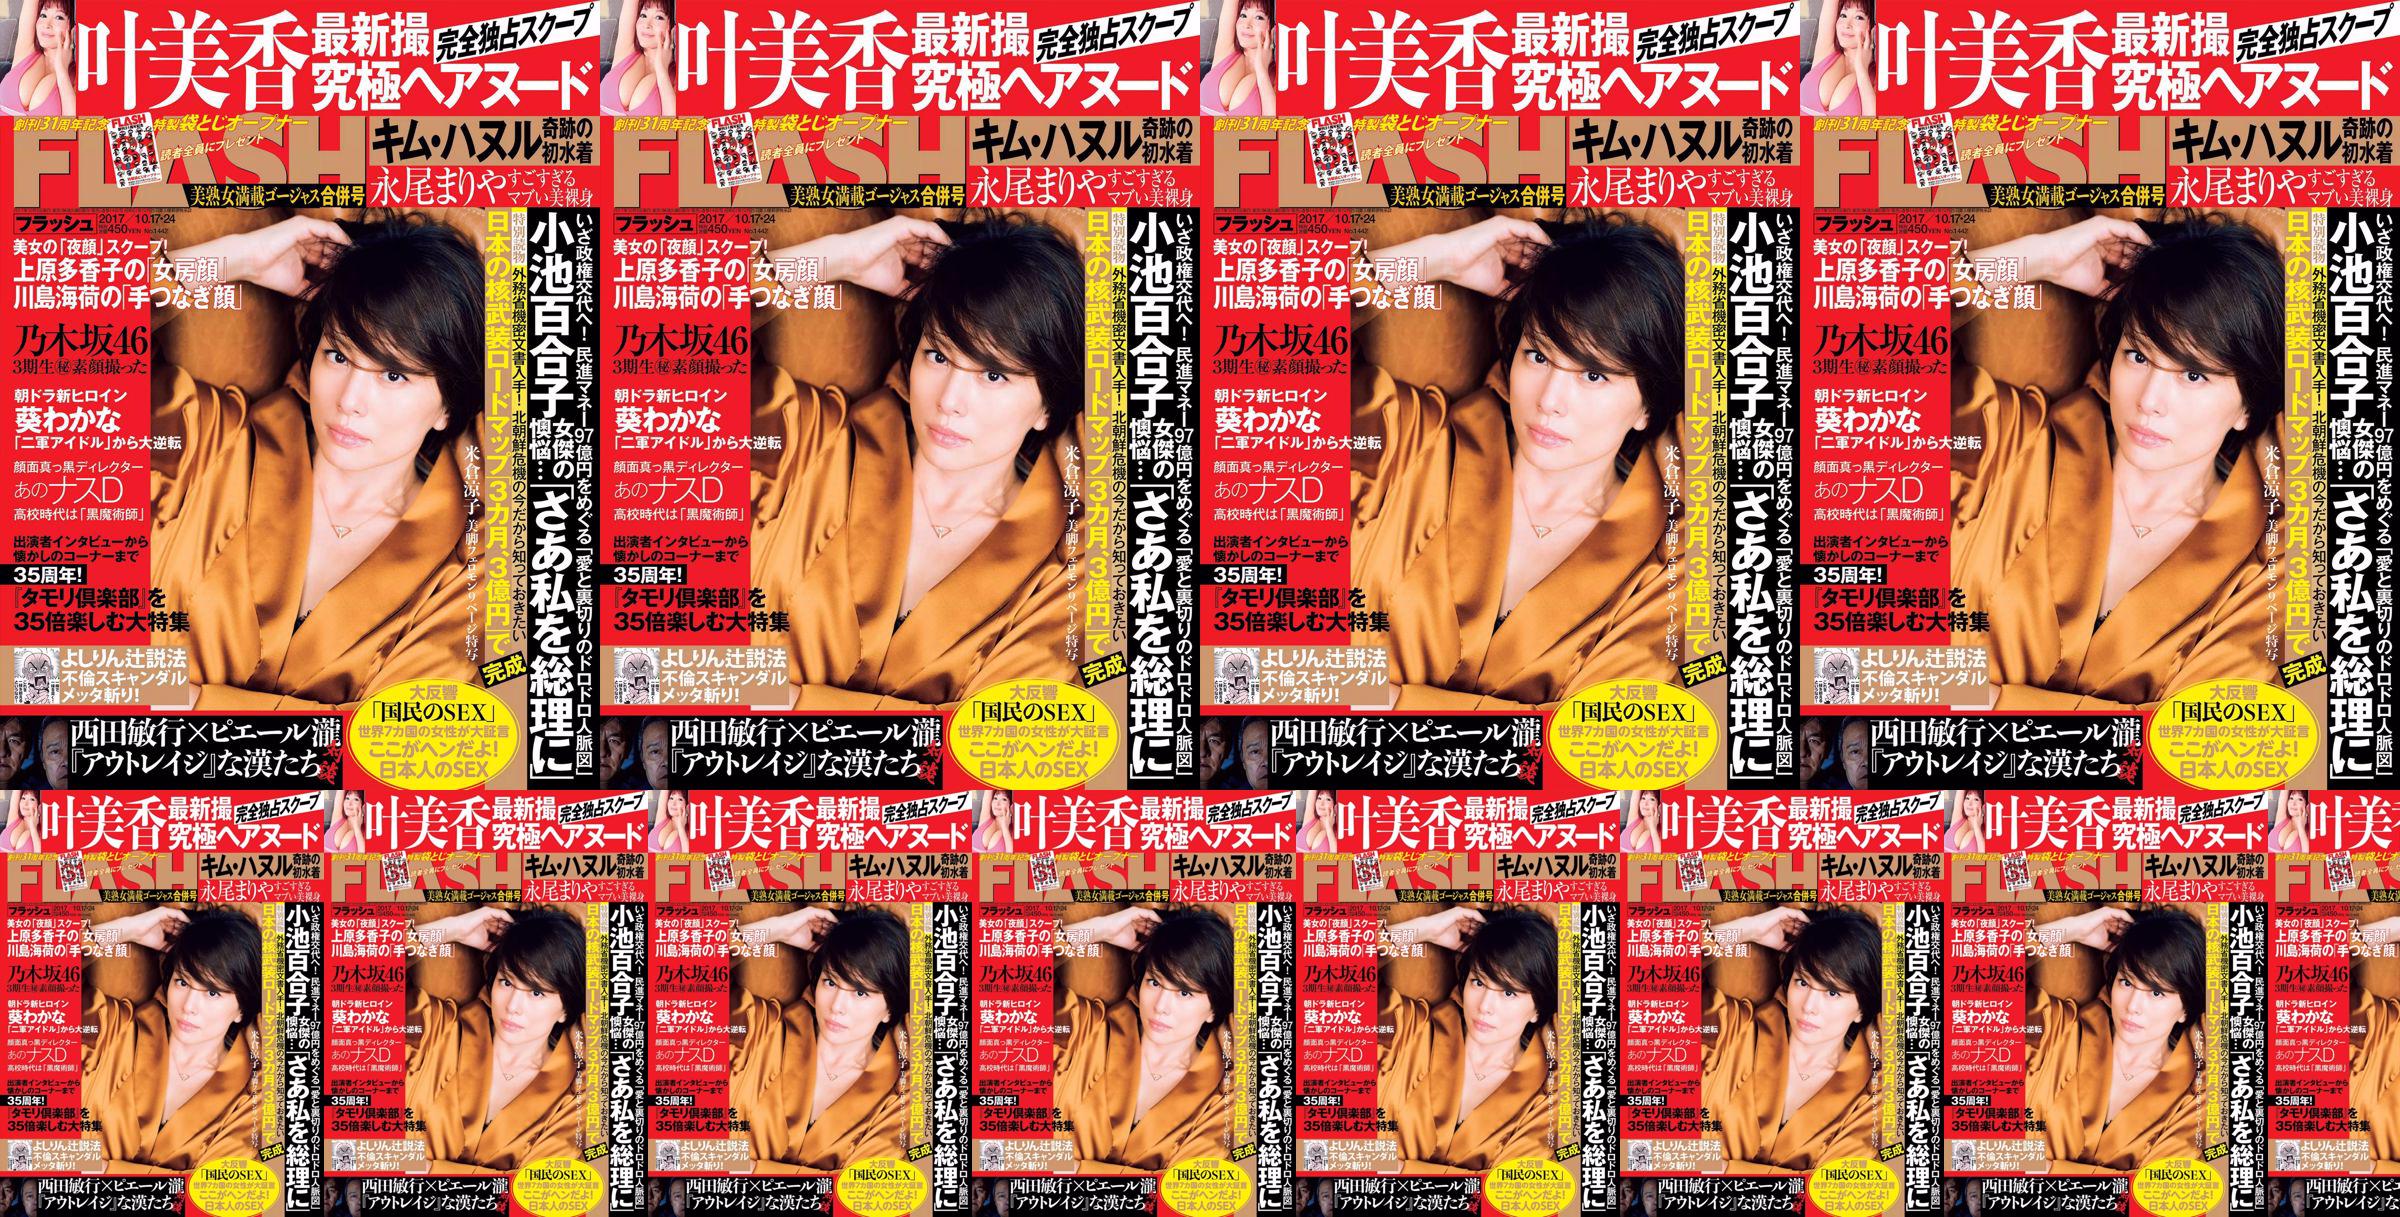 [FLASH] Yonekura Ryoko Ye Meixiang Tachibana Flower Rin Nagao ま り や 2017.10.17-24 Photo Magazine No.ff5df3 페이지 3